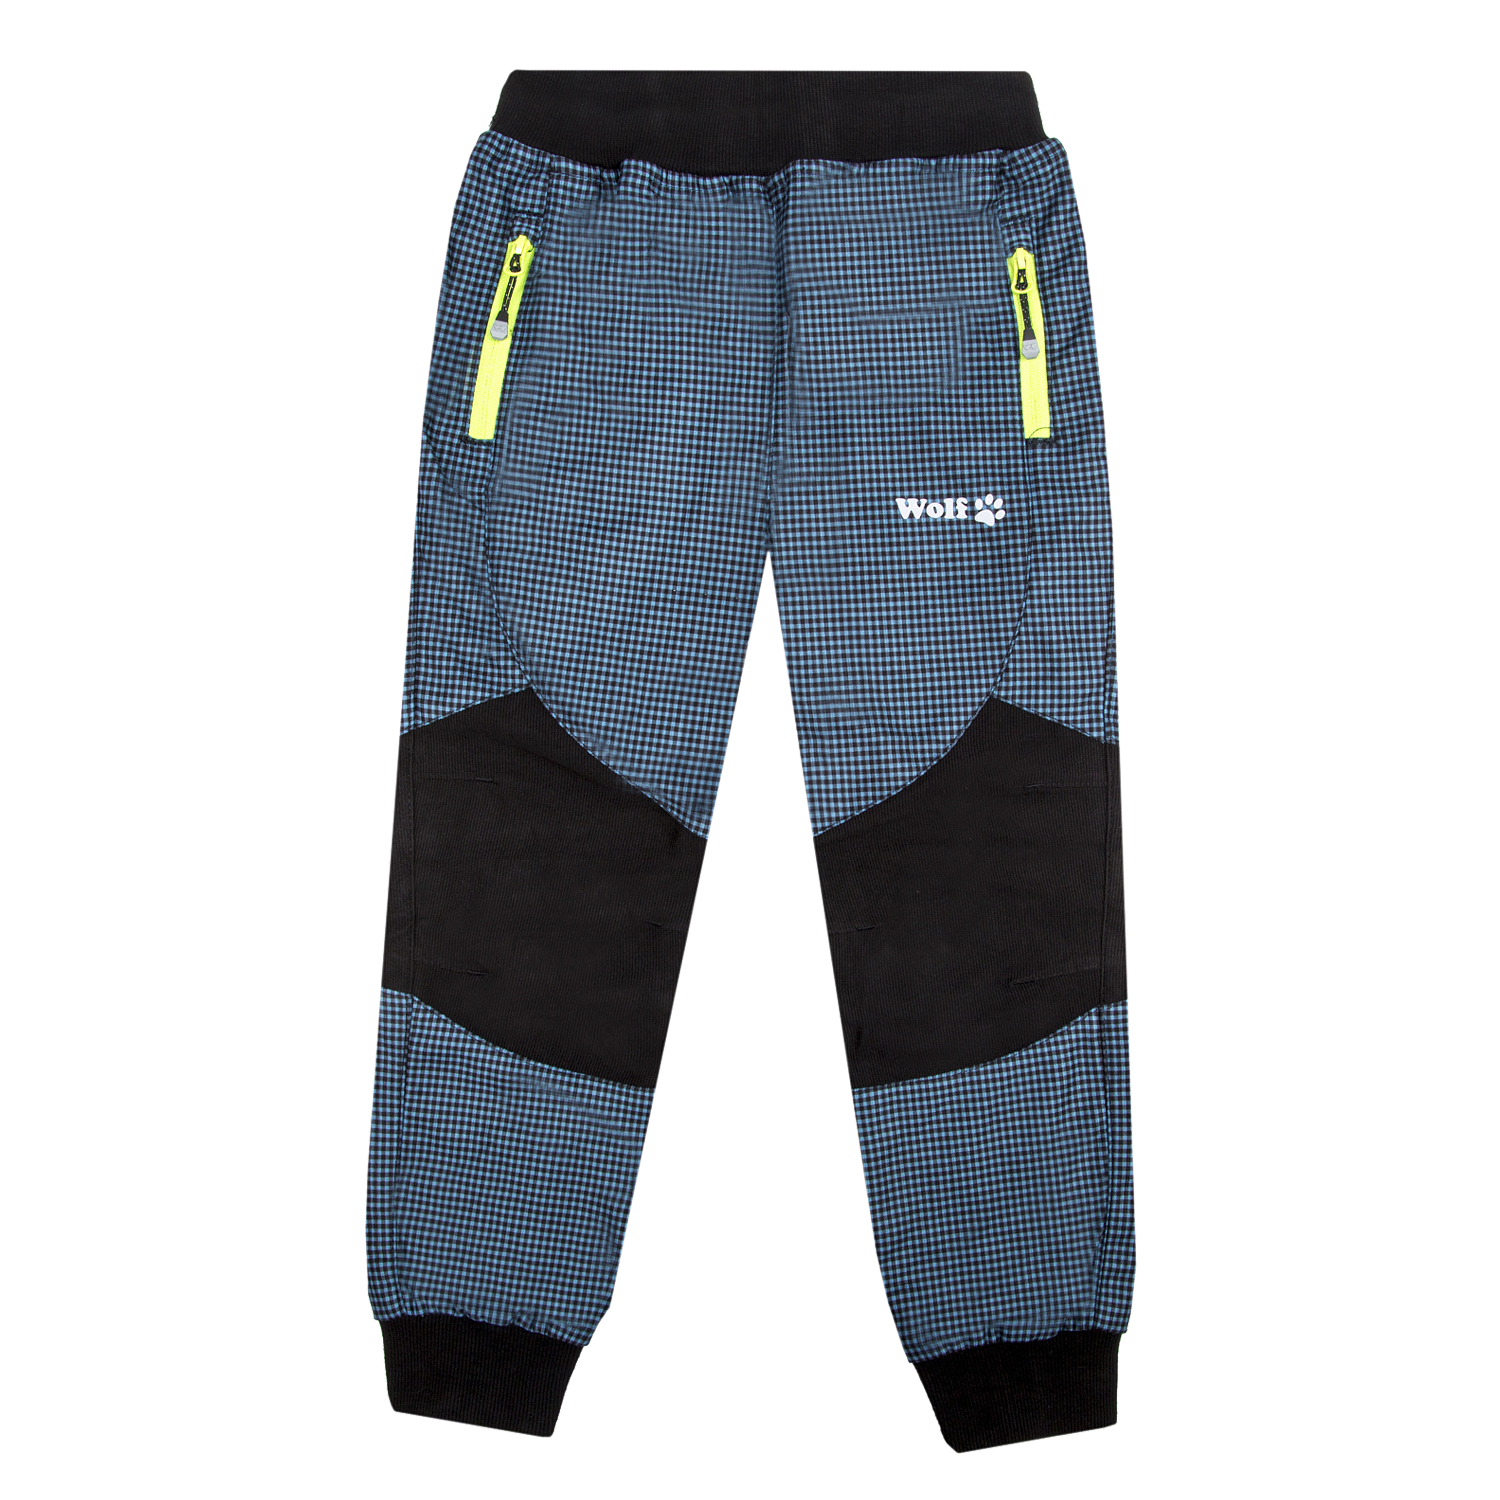 Chlapecké outdoorové kalhoty - Wolf T2251, petrol / signální zipy Barva: Petrol, Velikost: 98